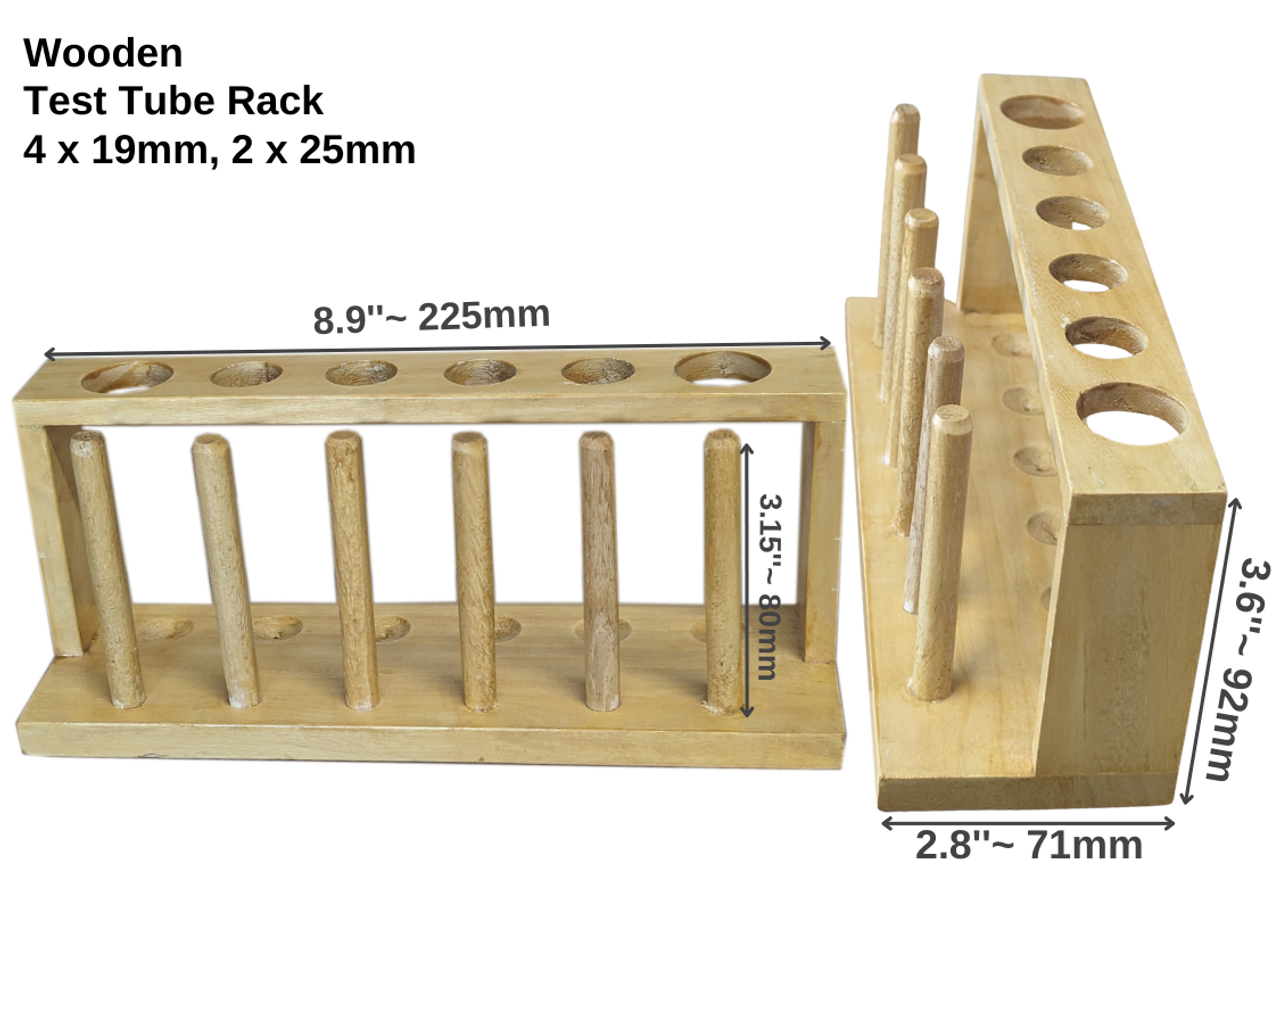 Test Tube Rack, Wooden